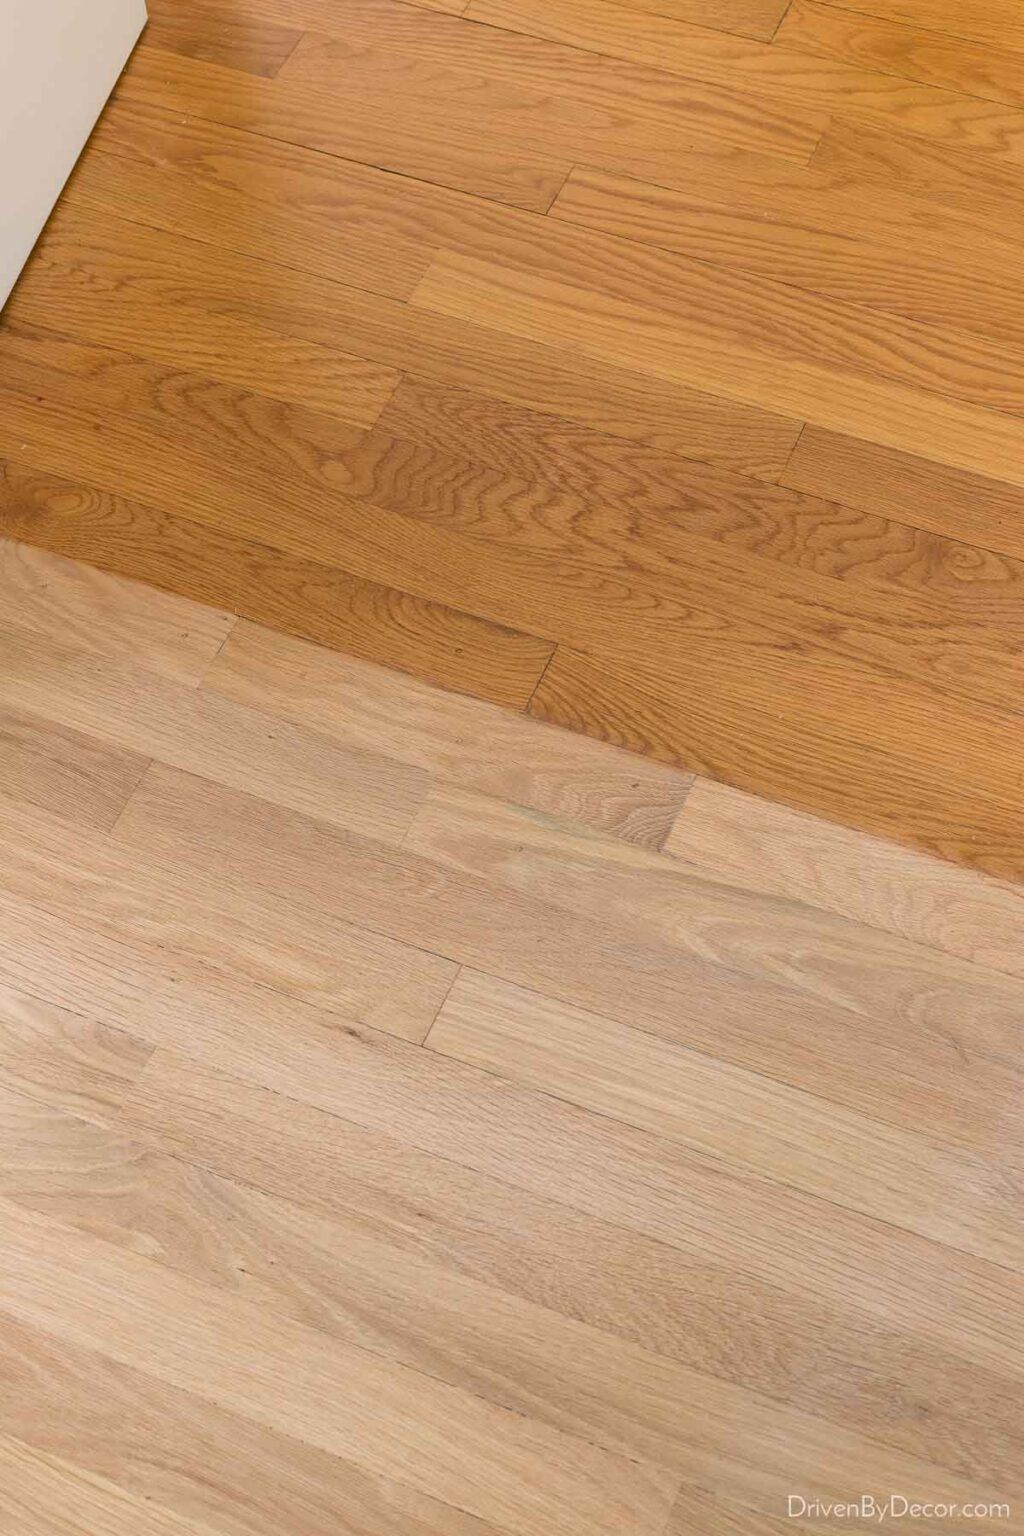 How to refinish maple floor?